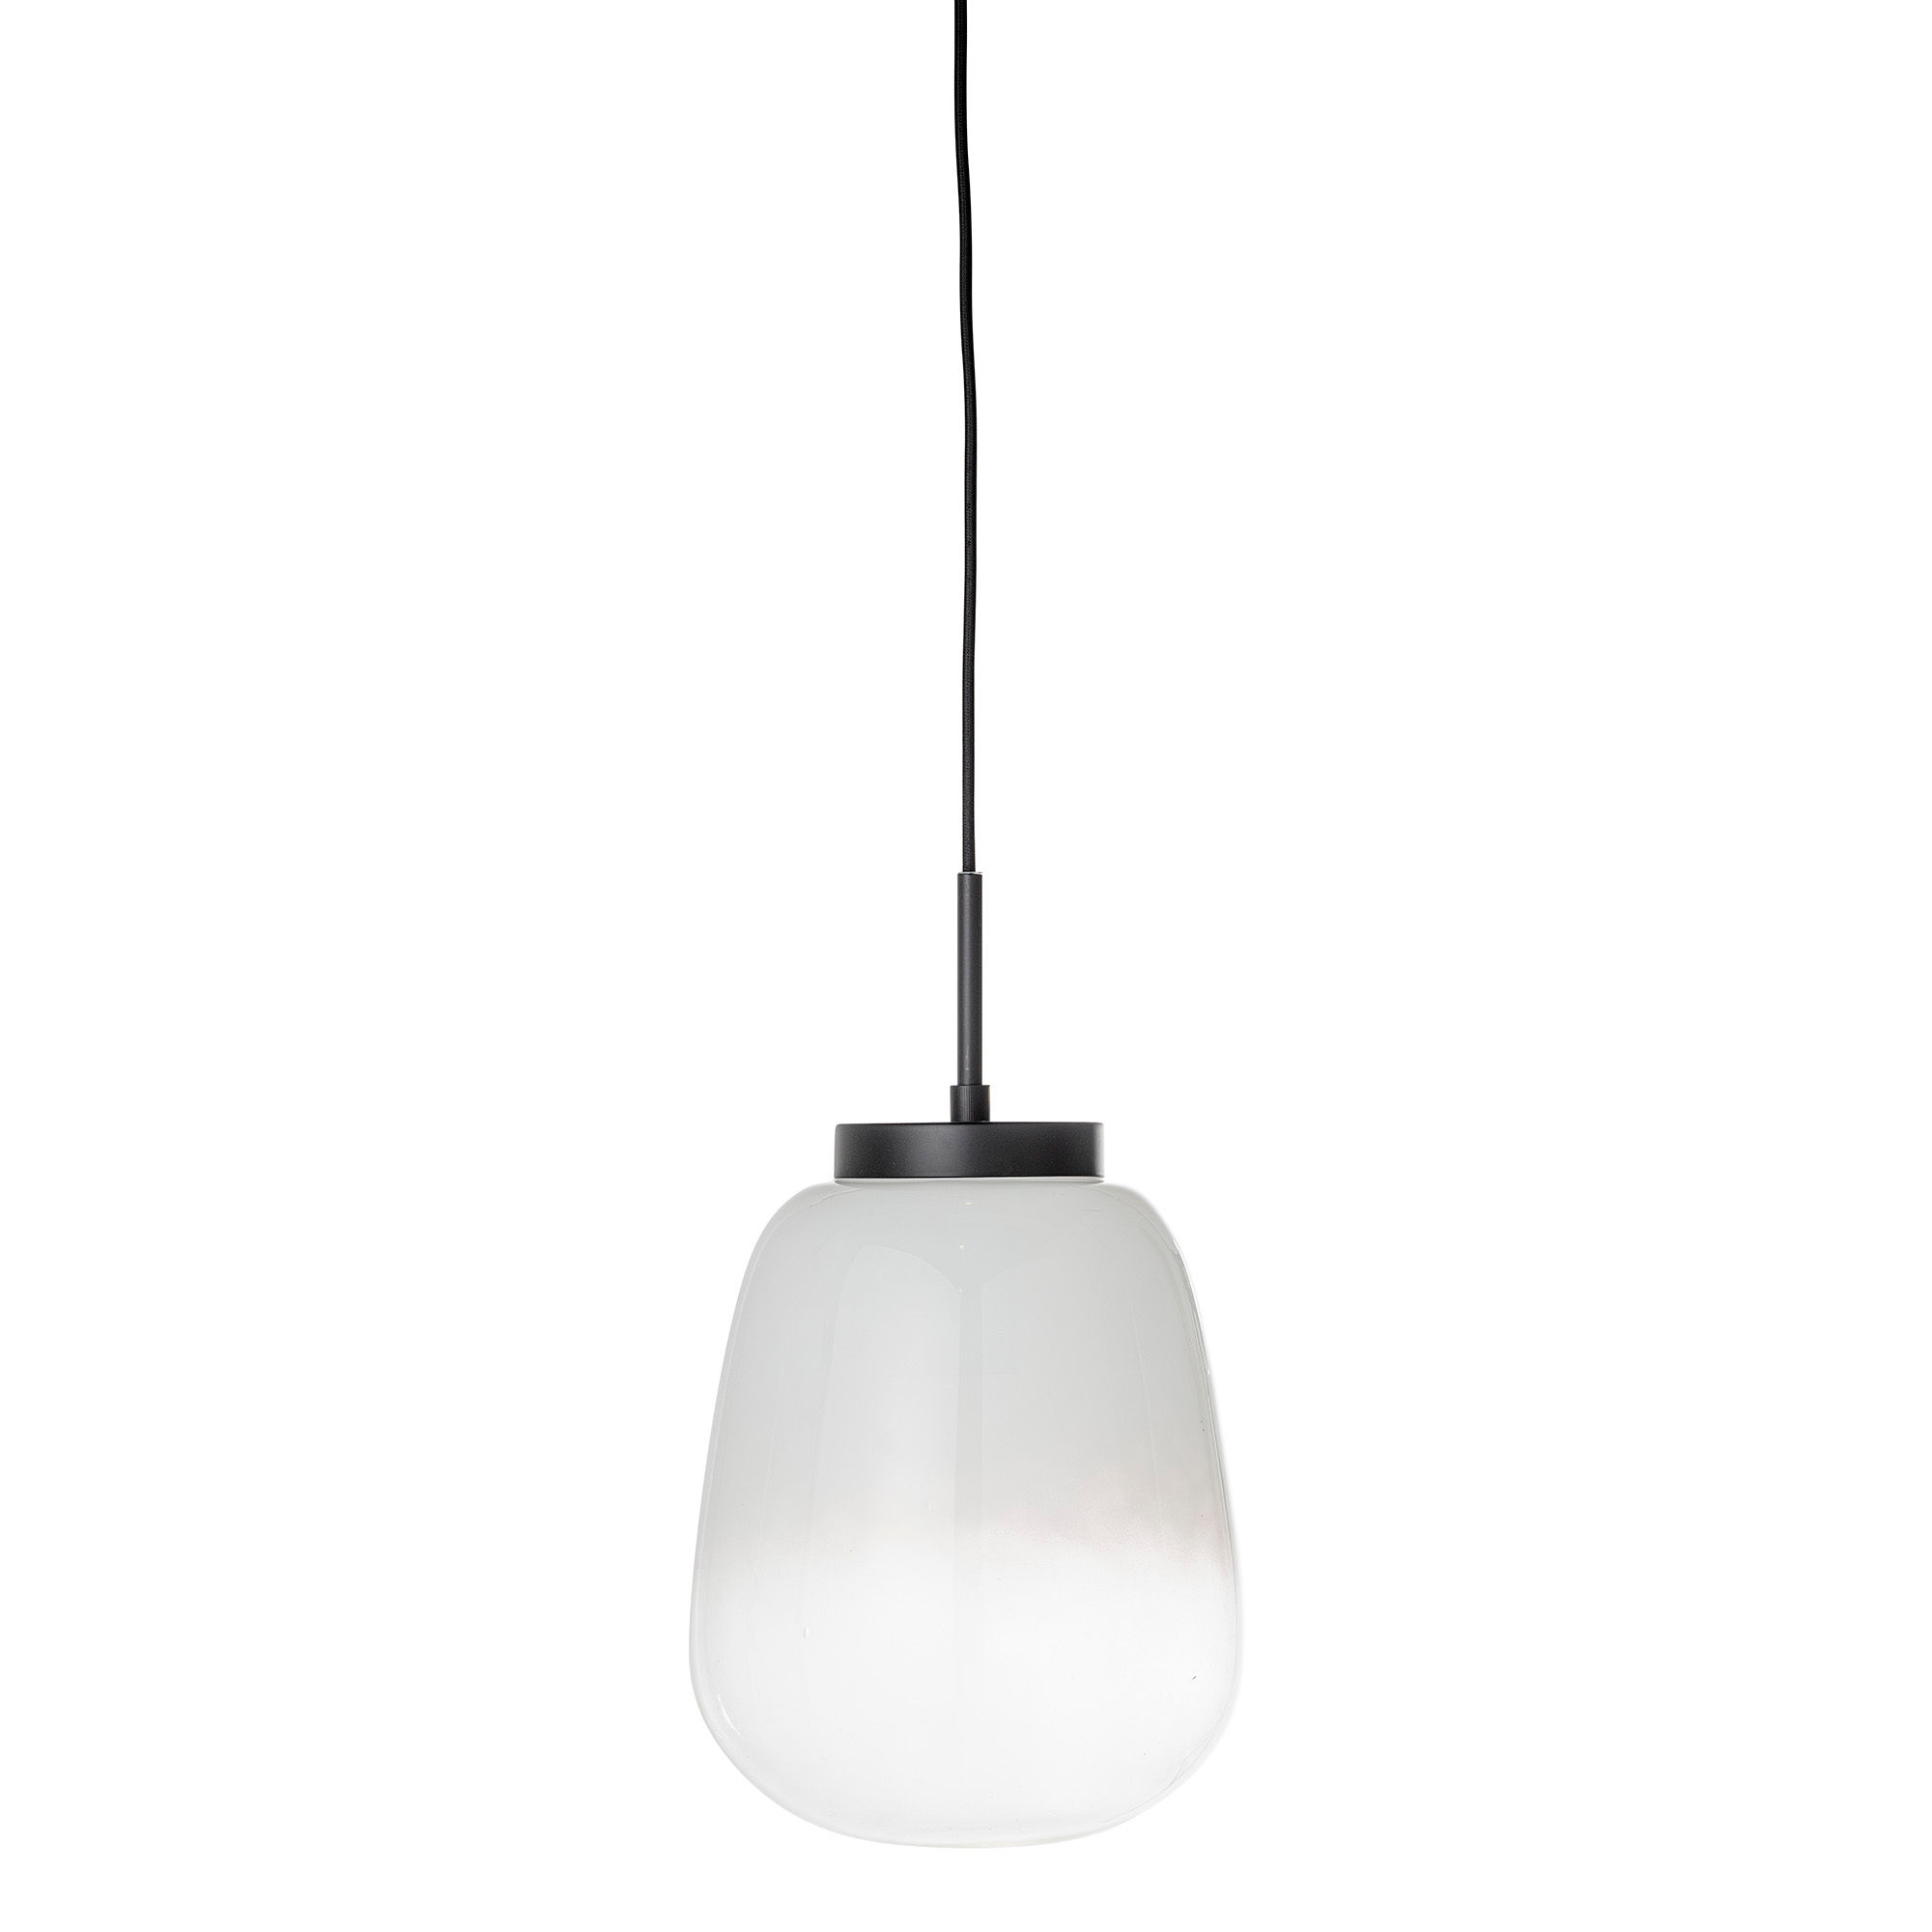 BLOOMINGVILLE Ece pendel loftslampe, rund - hvidt glas (Ø 25)